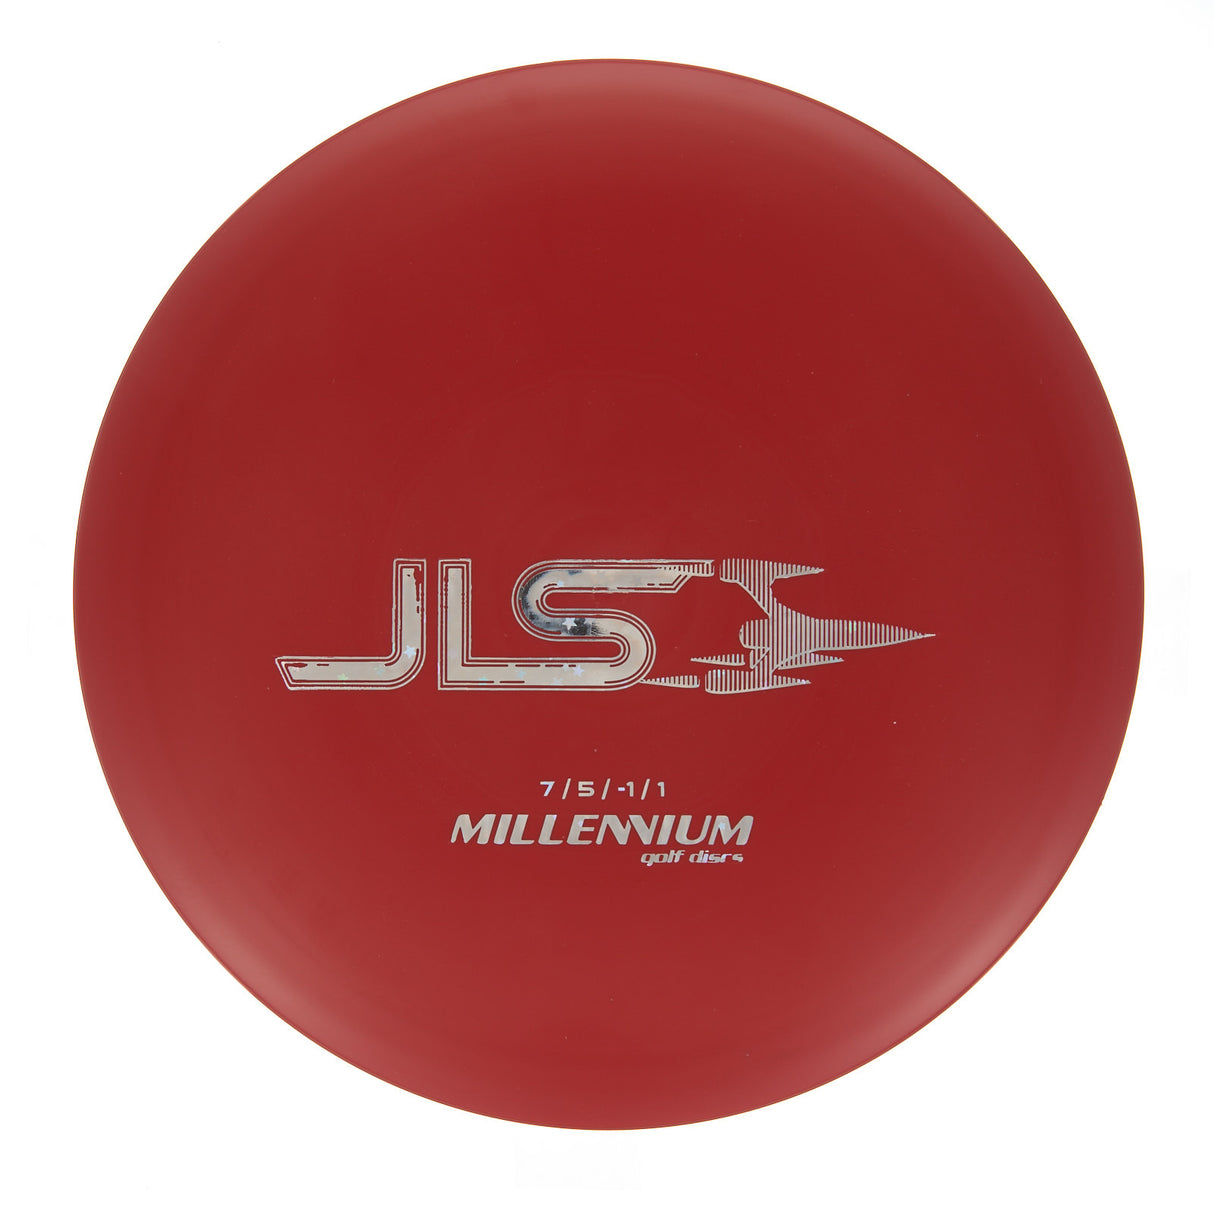 Millennium JLS - Standard 173g | Style 0001